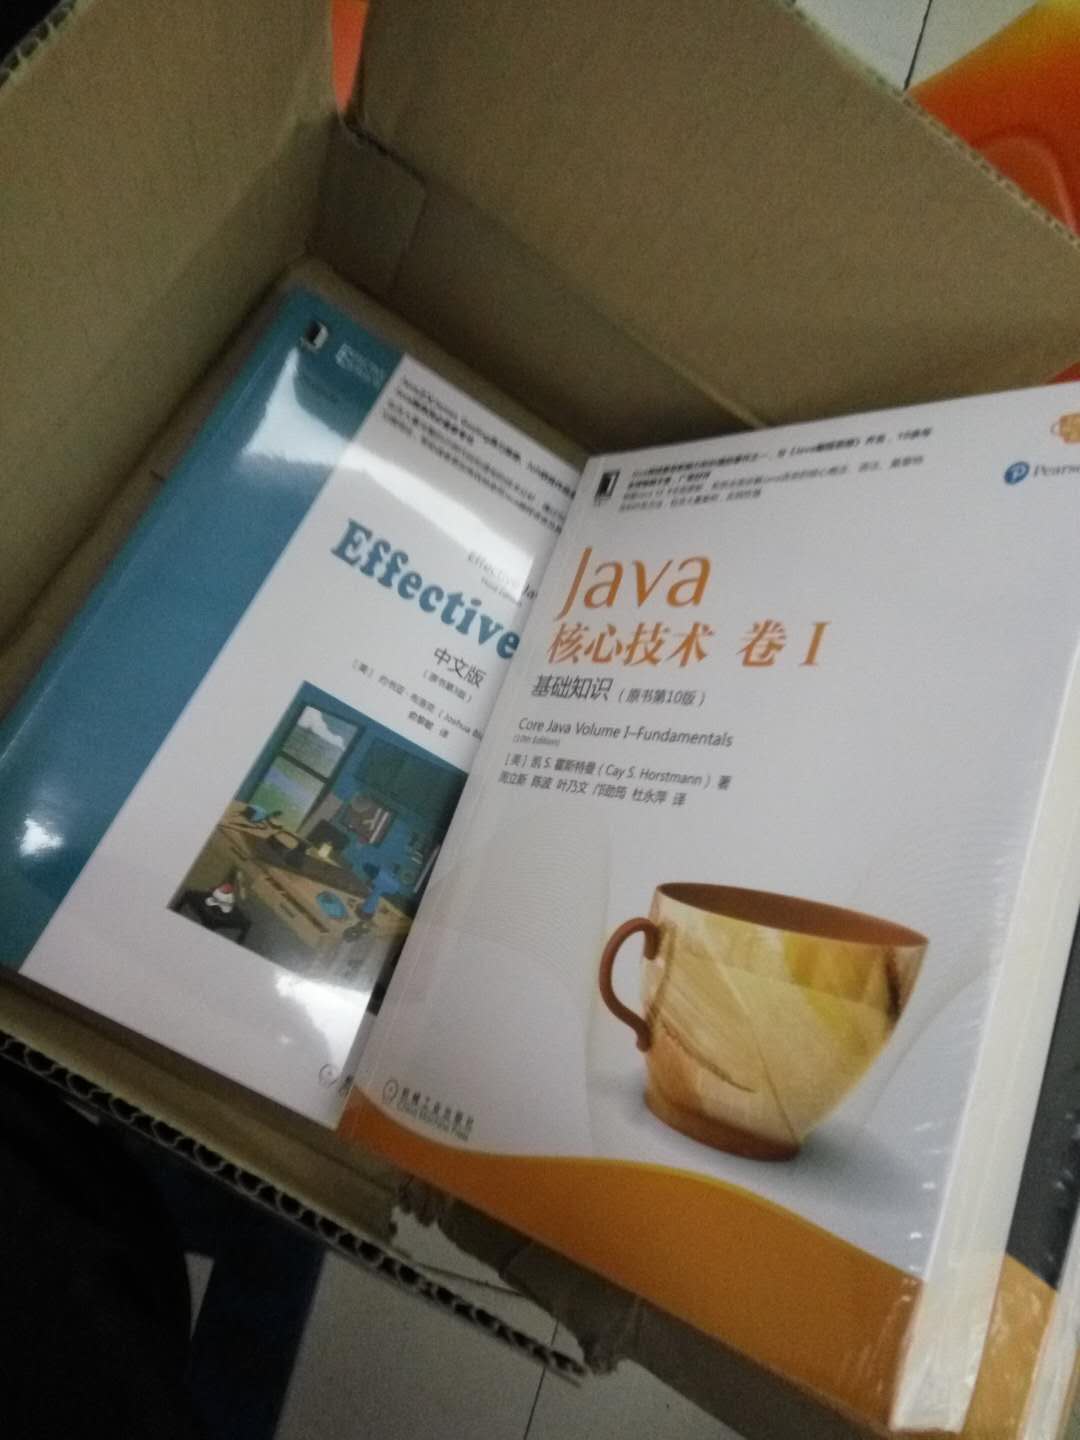 第一次在商城买书，最怕邮过来的书破损或出现其他的问题，一次买了四本，不过给我发的时候用纸箱子包起来了，还好，仔细翻看这几本书，没发现问题。这书建议有Java基础的人看，不是入门书籍，我搞Java已经两年了，也开发过一些项目，买这个就是想往理论方面走。